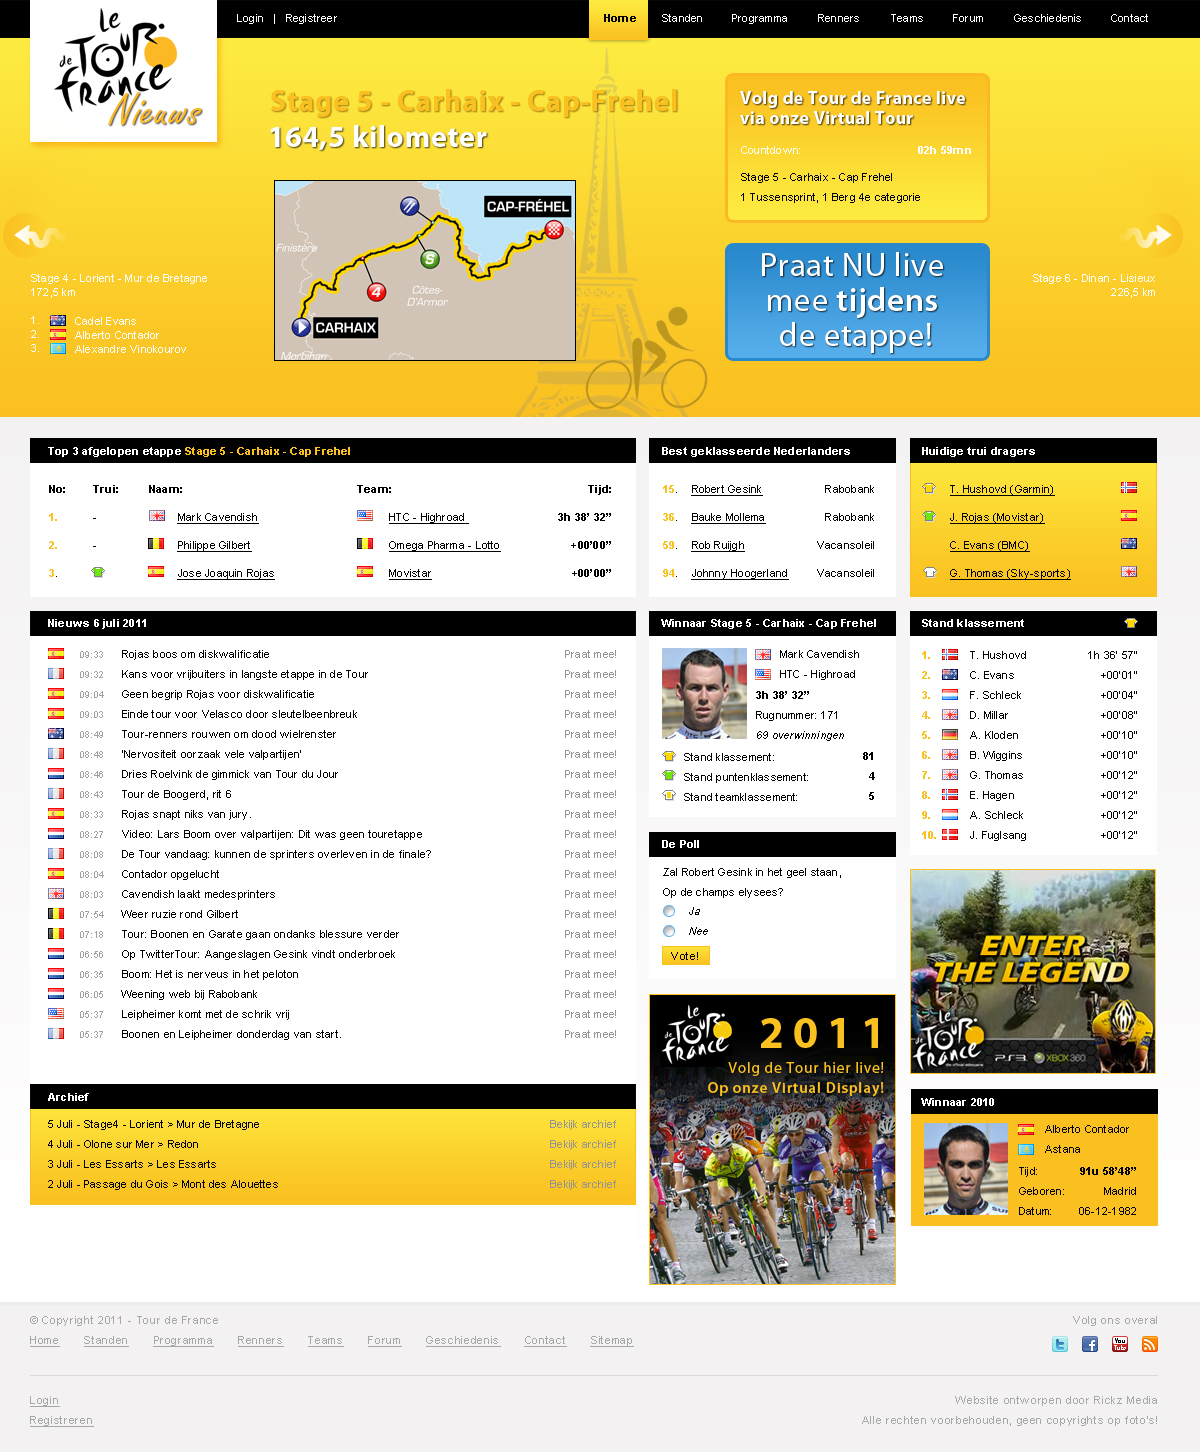 Tour de France ontwerp-tour_ontwerp-jpg